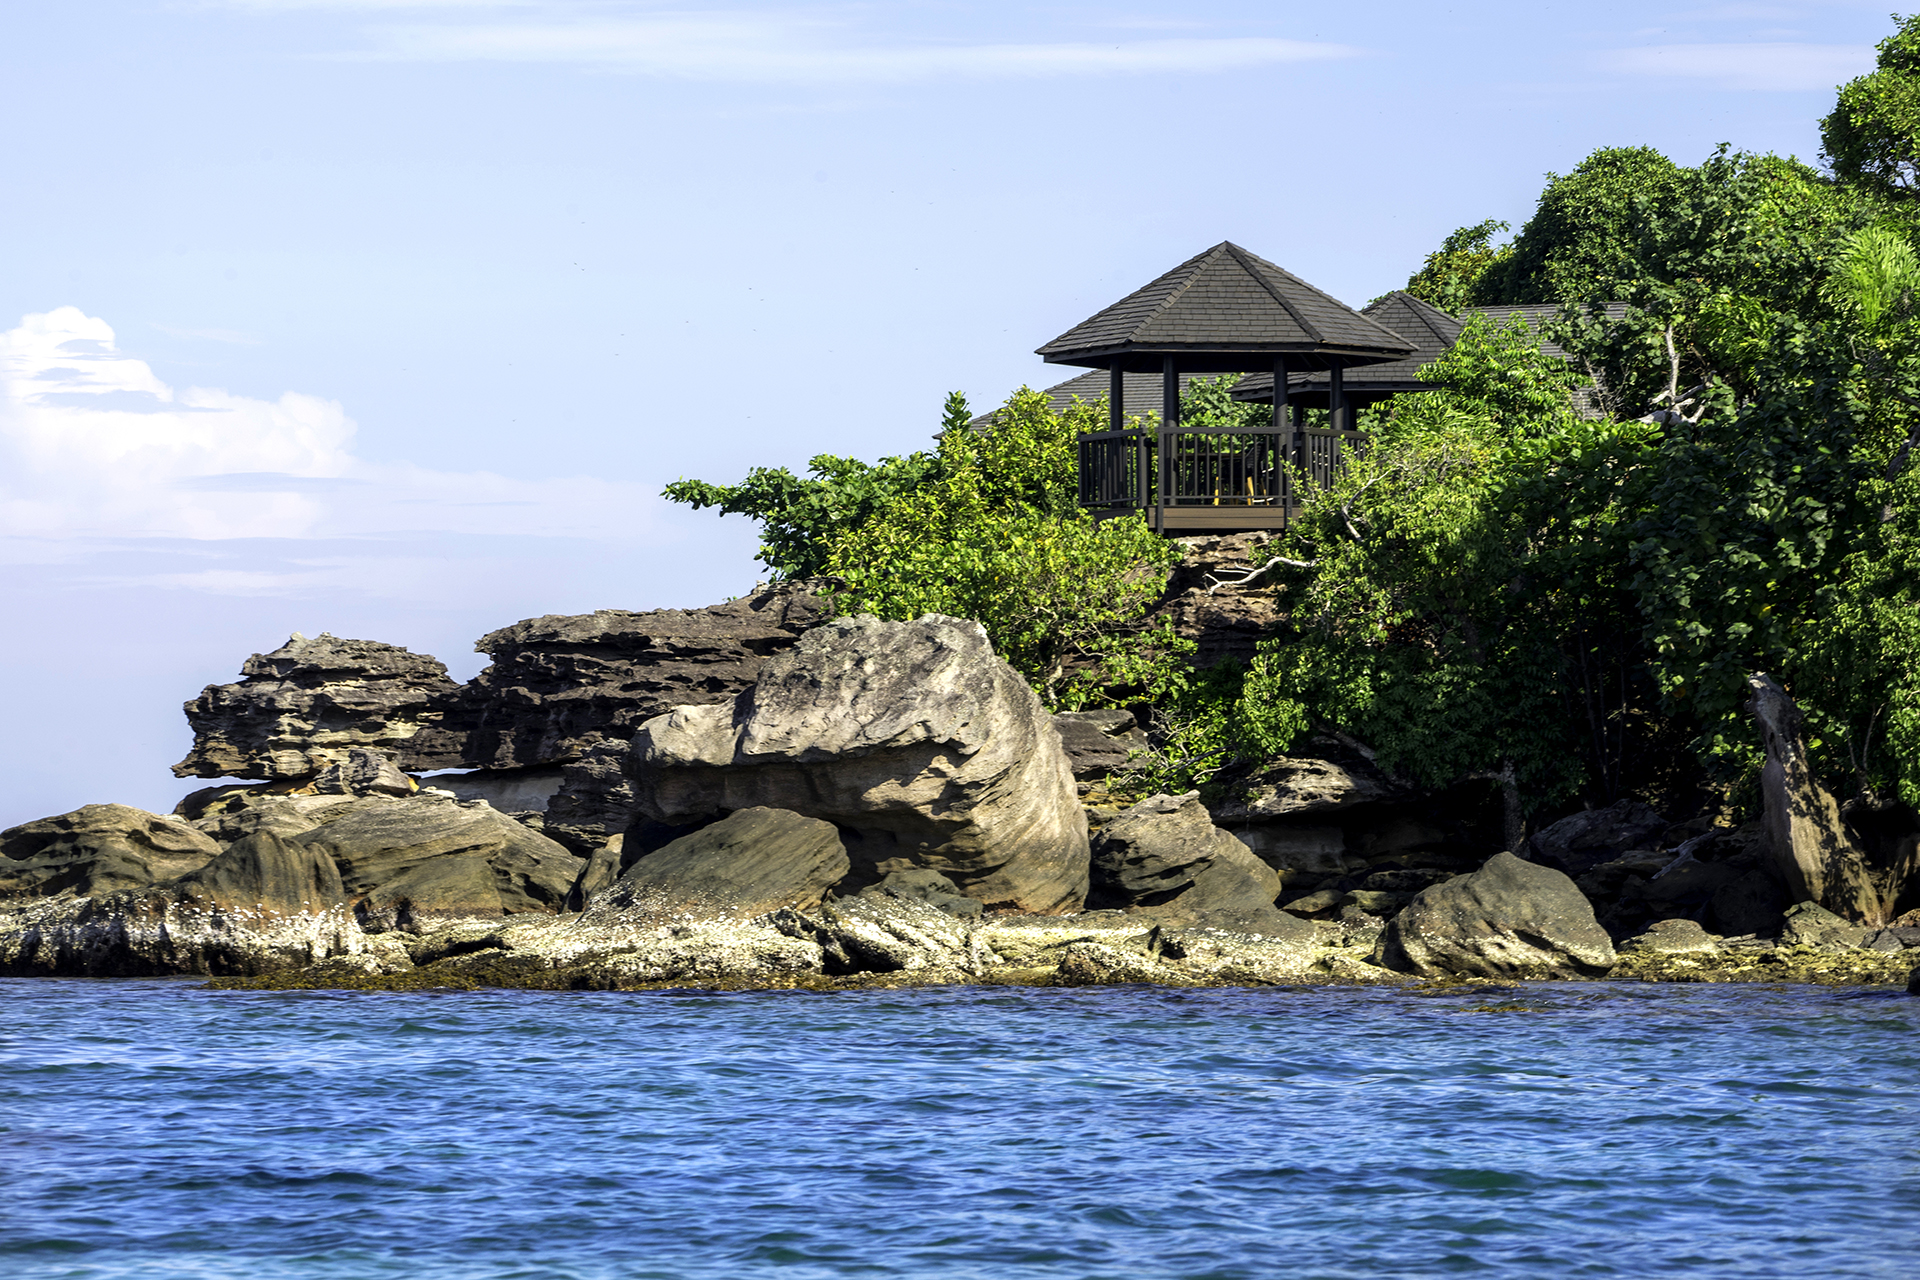 Mỗi bước du khách tiến gần hơn đến Nam Nghi Phú Quốc là một đảo “thiên đường” thơ mộng dần hiện ra trên mặt biển xanh biếc. Tại đây, tâm hồn cảm thụ cuộc sống của Qúy khách sẽ được đánh thức bằng mọi giác quan tại villa của riêng mình.